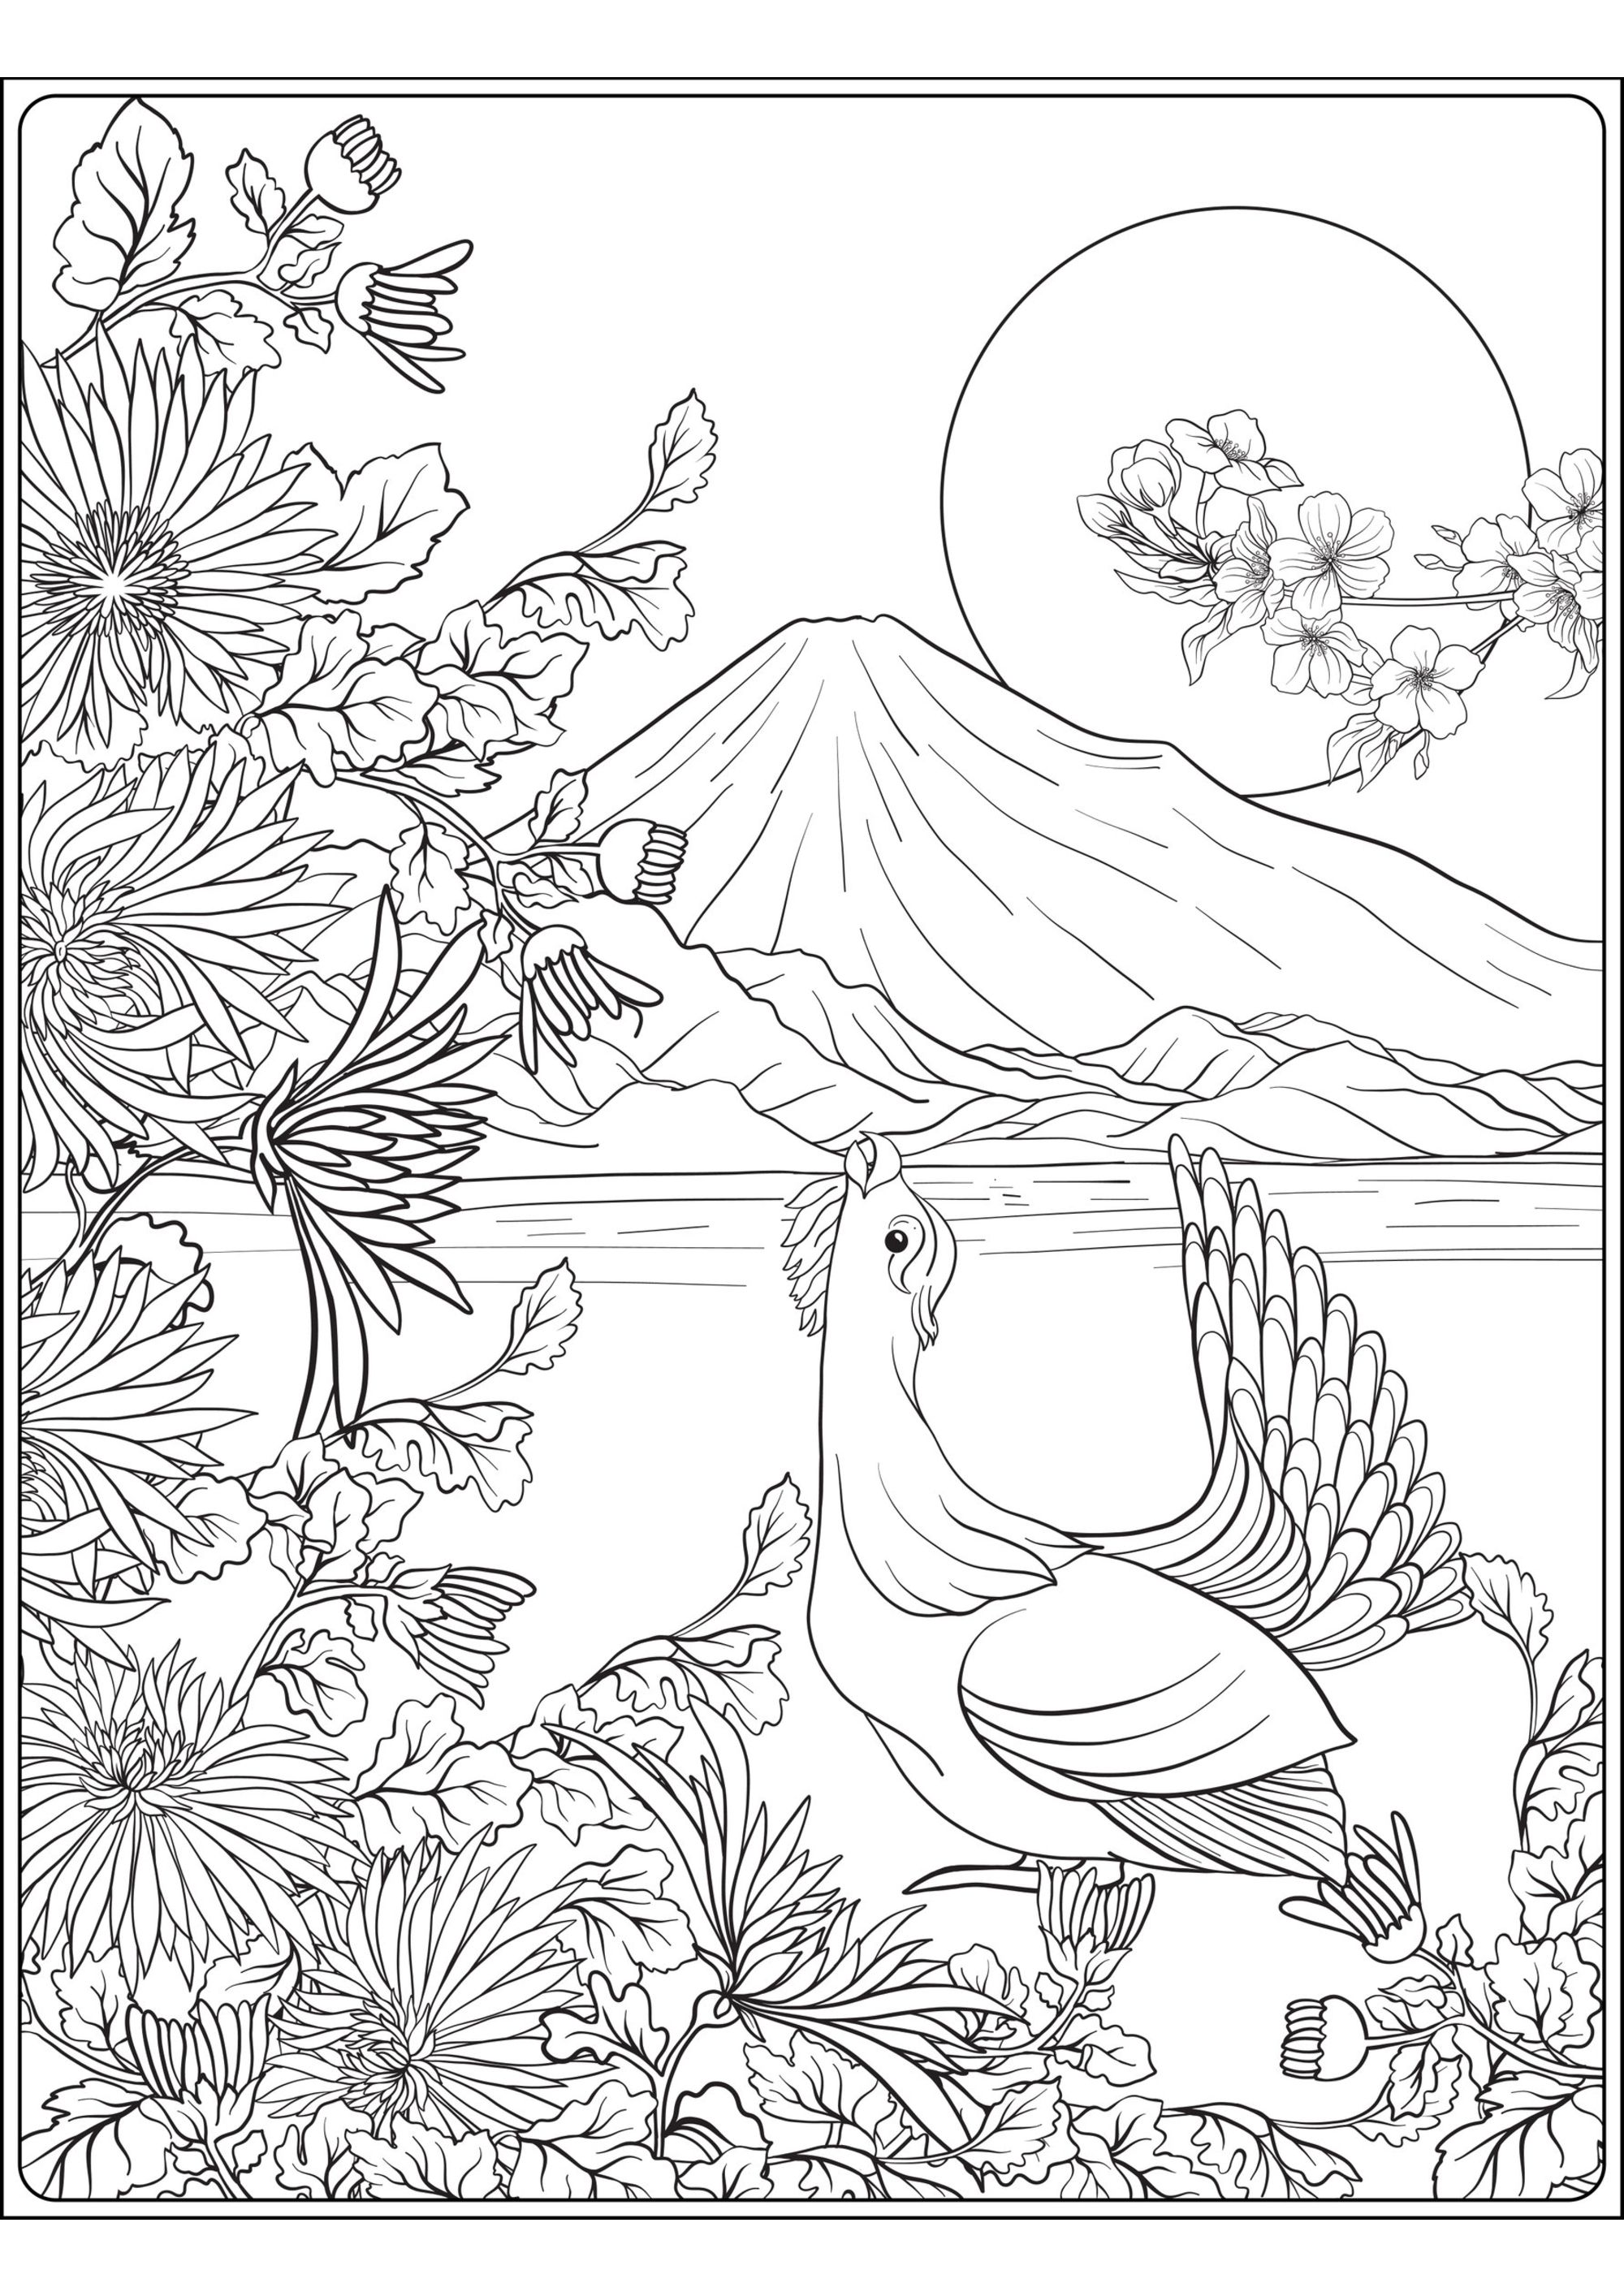 Monte Fuji y pájaro. Una magnífica página para colorear sobre el tema de Japón, con un pájaro, el monte Fuji y un primer plano lleno de bonitas plantas y flores.